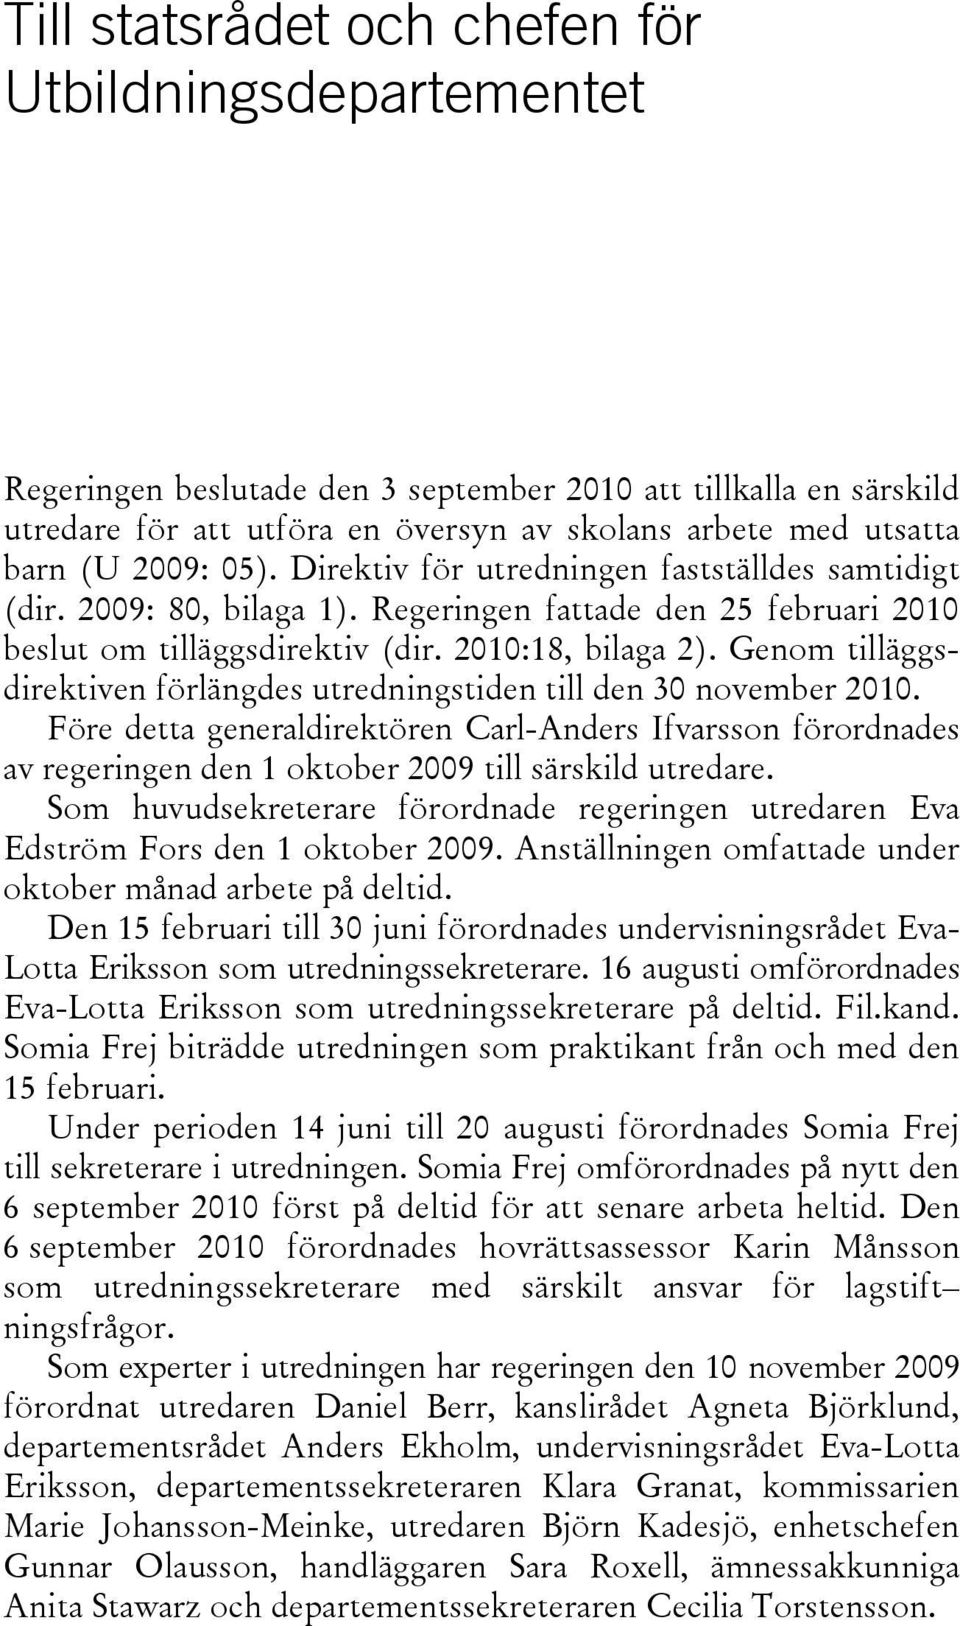 Genom tilläggsdirektiven förlängdes utredningstiden till den 30 november 2010. Före detta generaldirektören Carl-Anders Ifvarsson förordnades av regeringen den 1 oktober 2009 till särskild utredare.